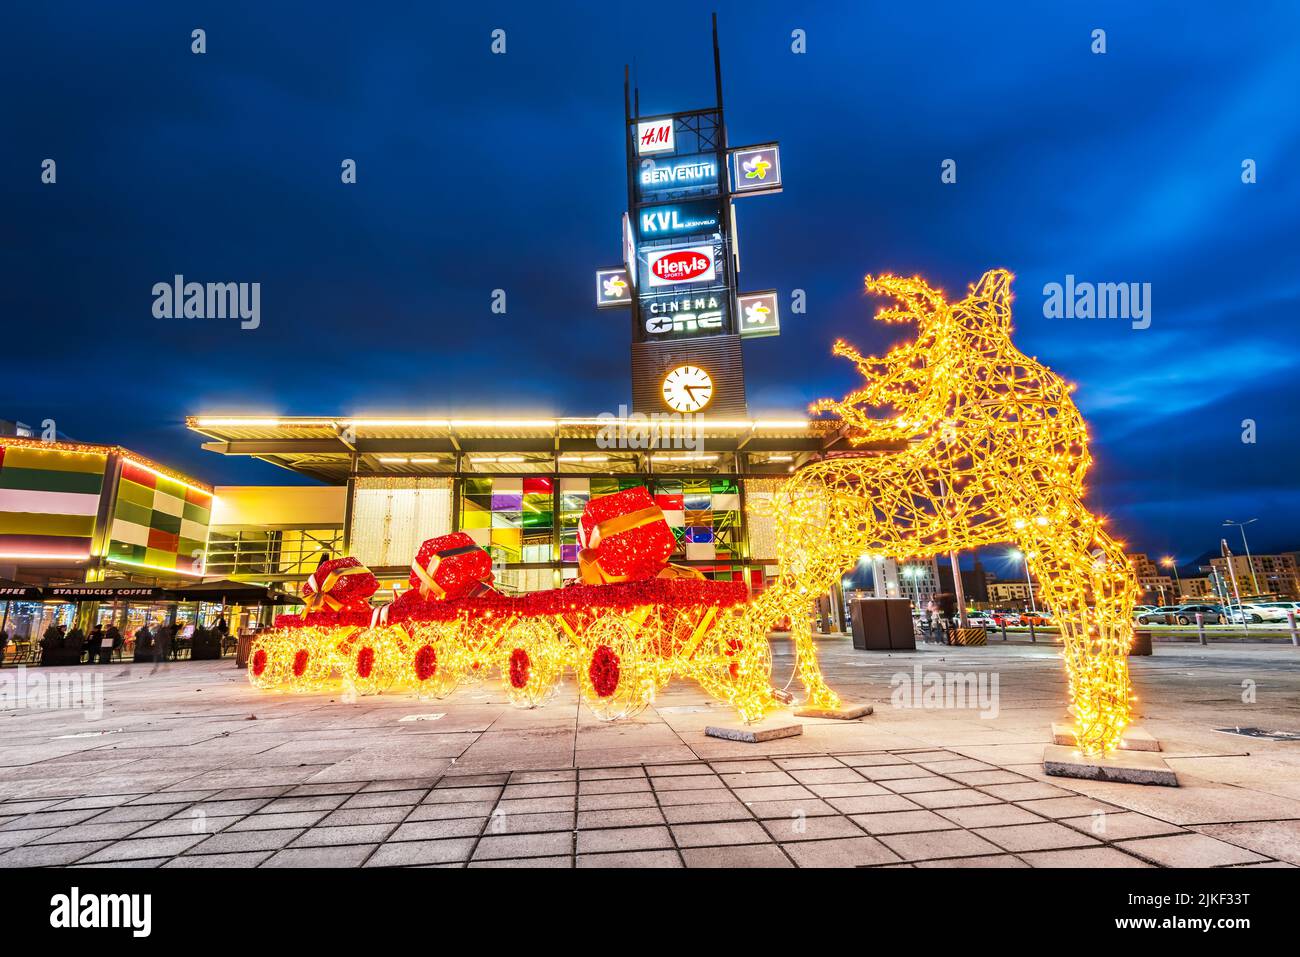 Brasov, Rumania - Diciembre 2020: Decoración del Mercado de Navidad en el Centro Comercial Coresi, el centro comercial más grande de Transilvania, destino de viajes de invierno. Foto de stock